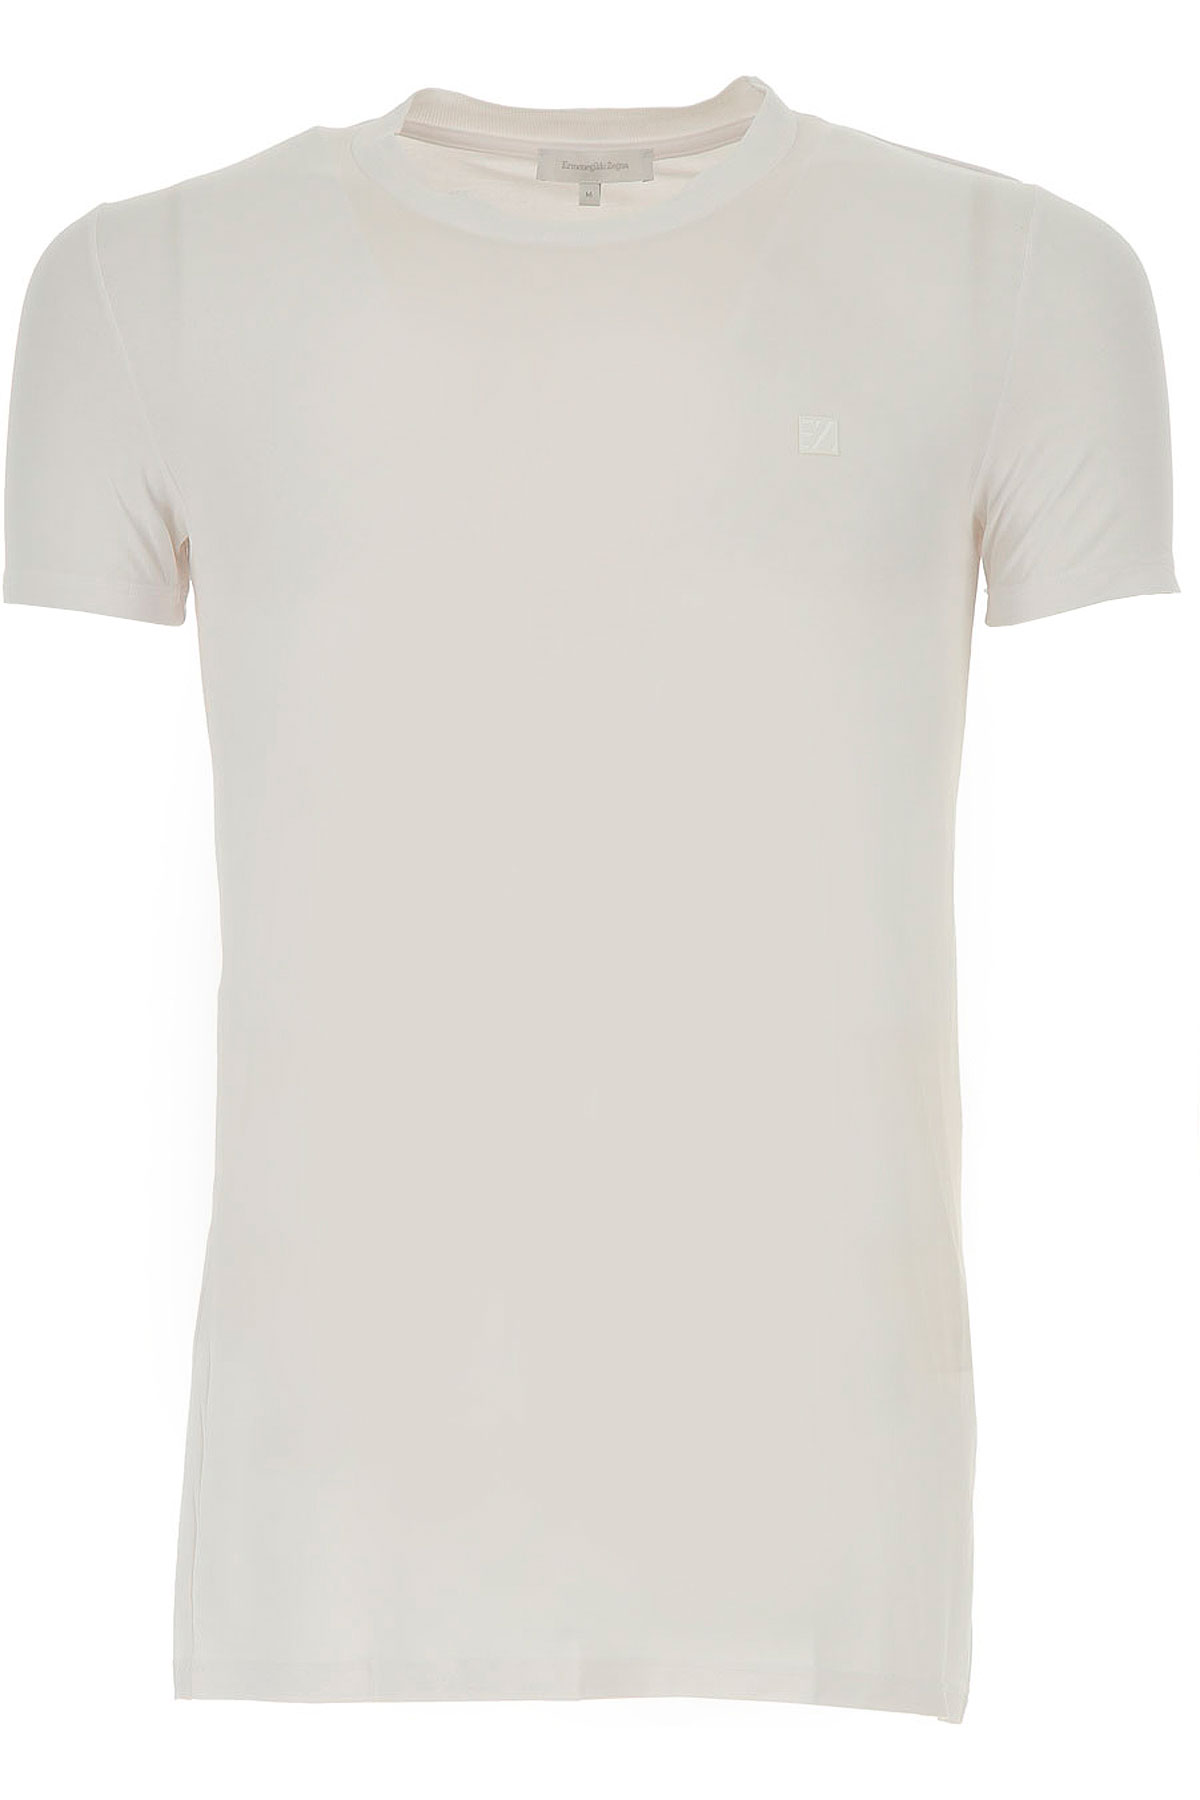 Ermenegildo Zegna T-shirt Homme , Blanc, Modal, 2017, M S XL